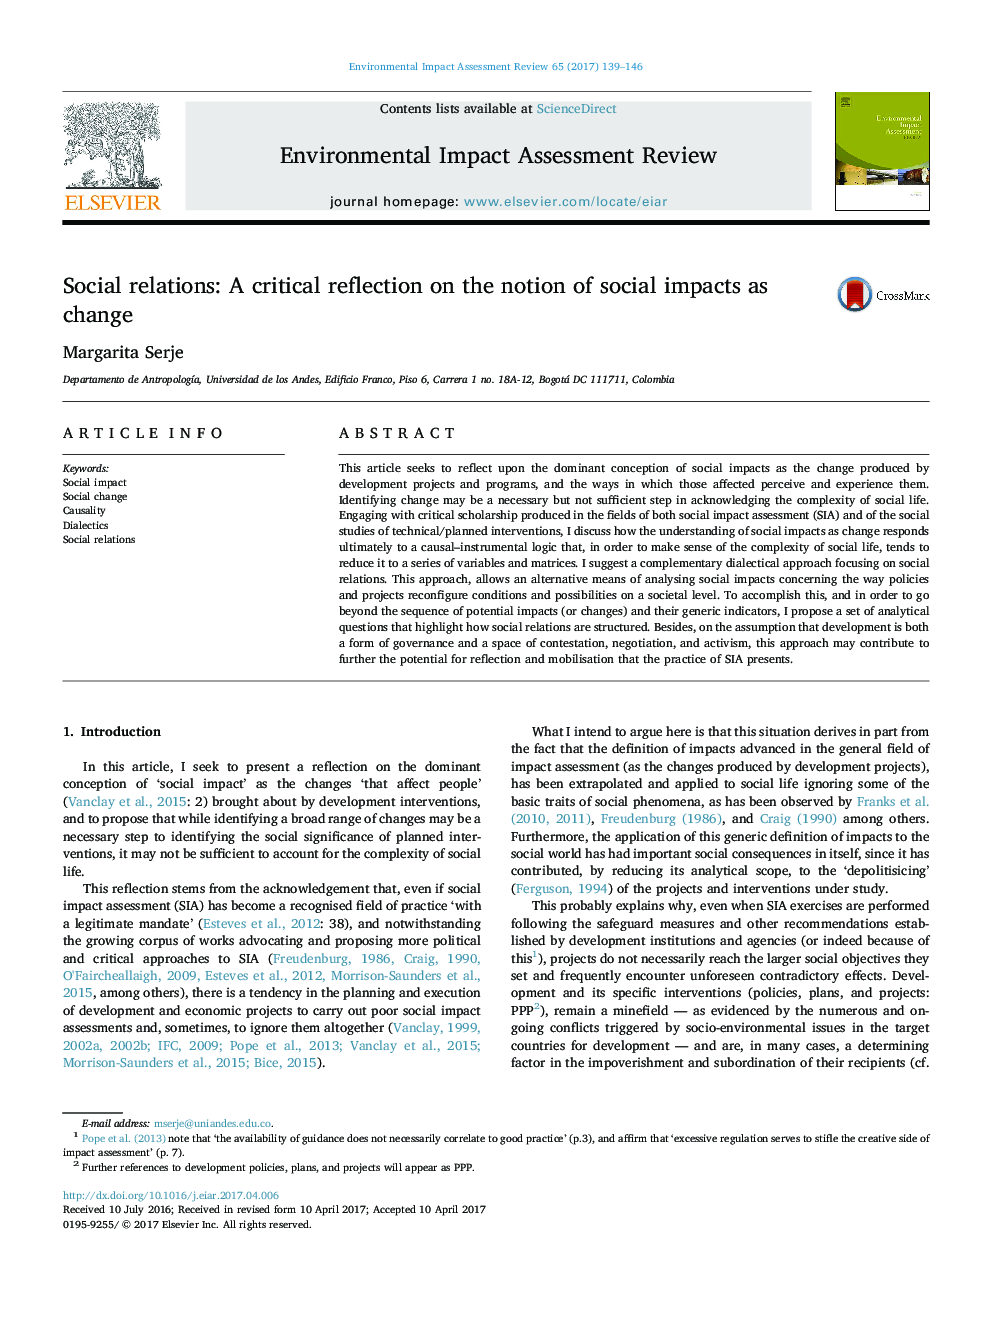 روابط اجتماعی: بازتاب بحرانی در مفهوم تأثیرات اجتماعی به عنوان تغییر است 